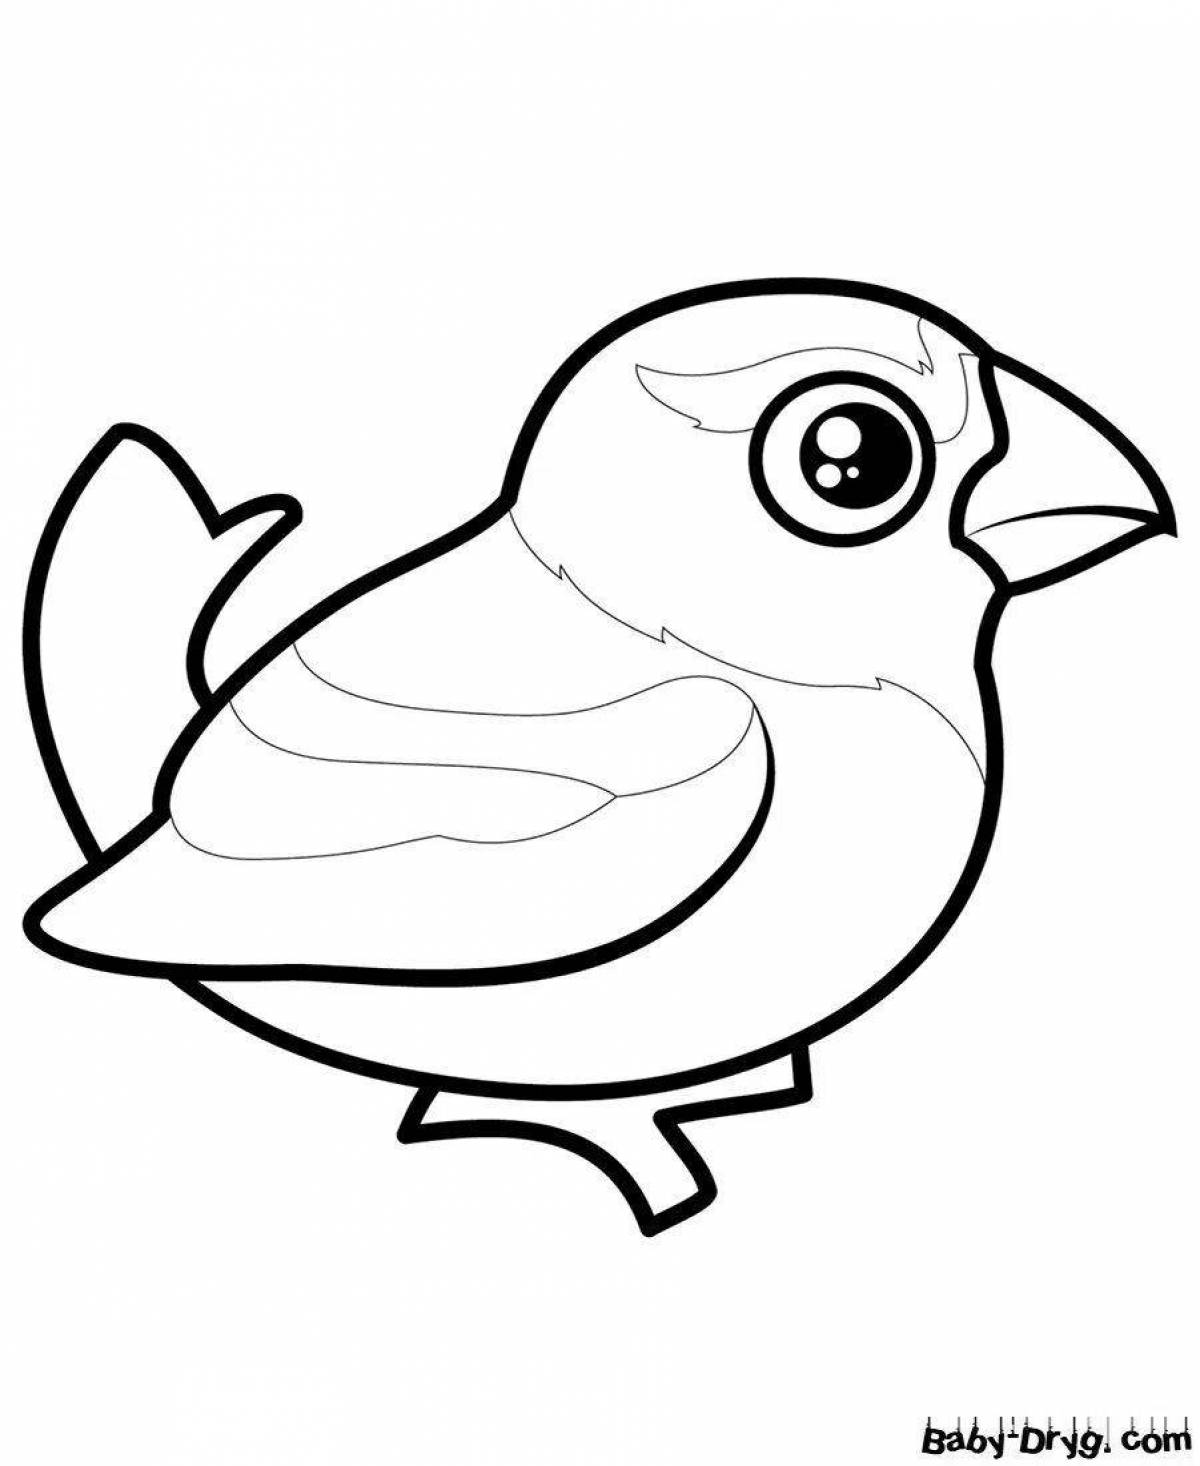 Coloring cute sparrow